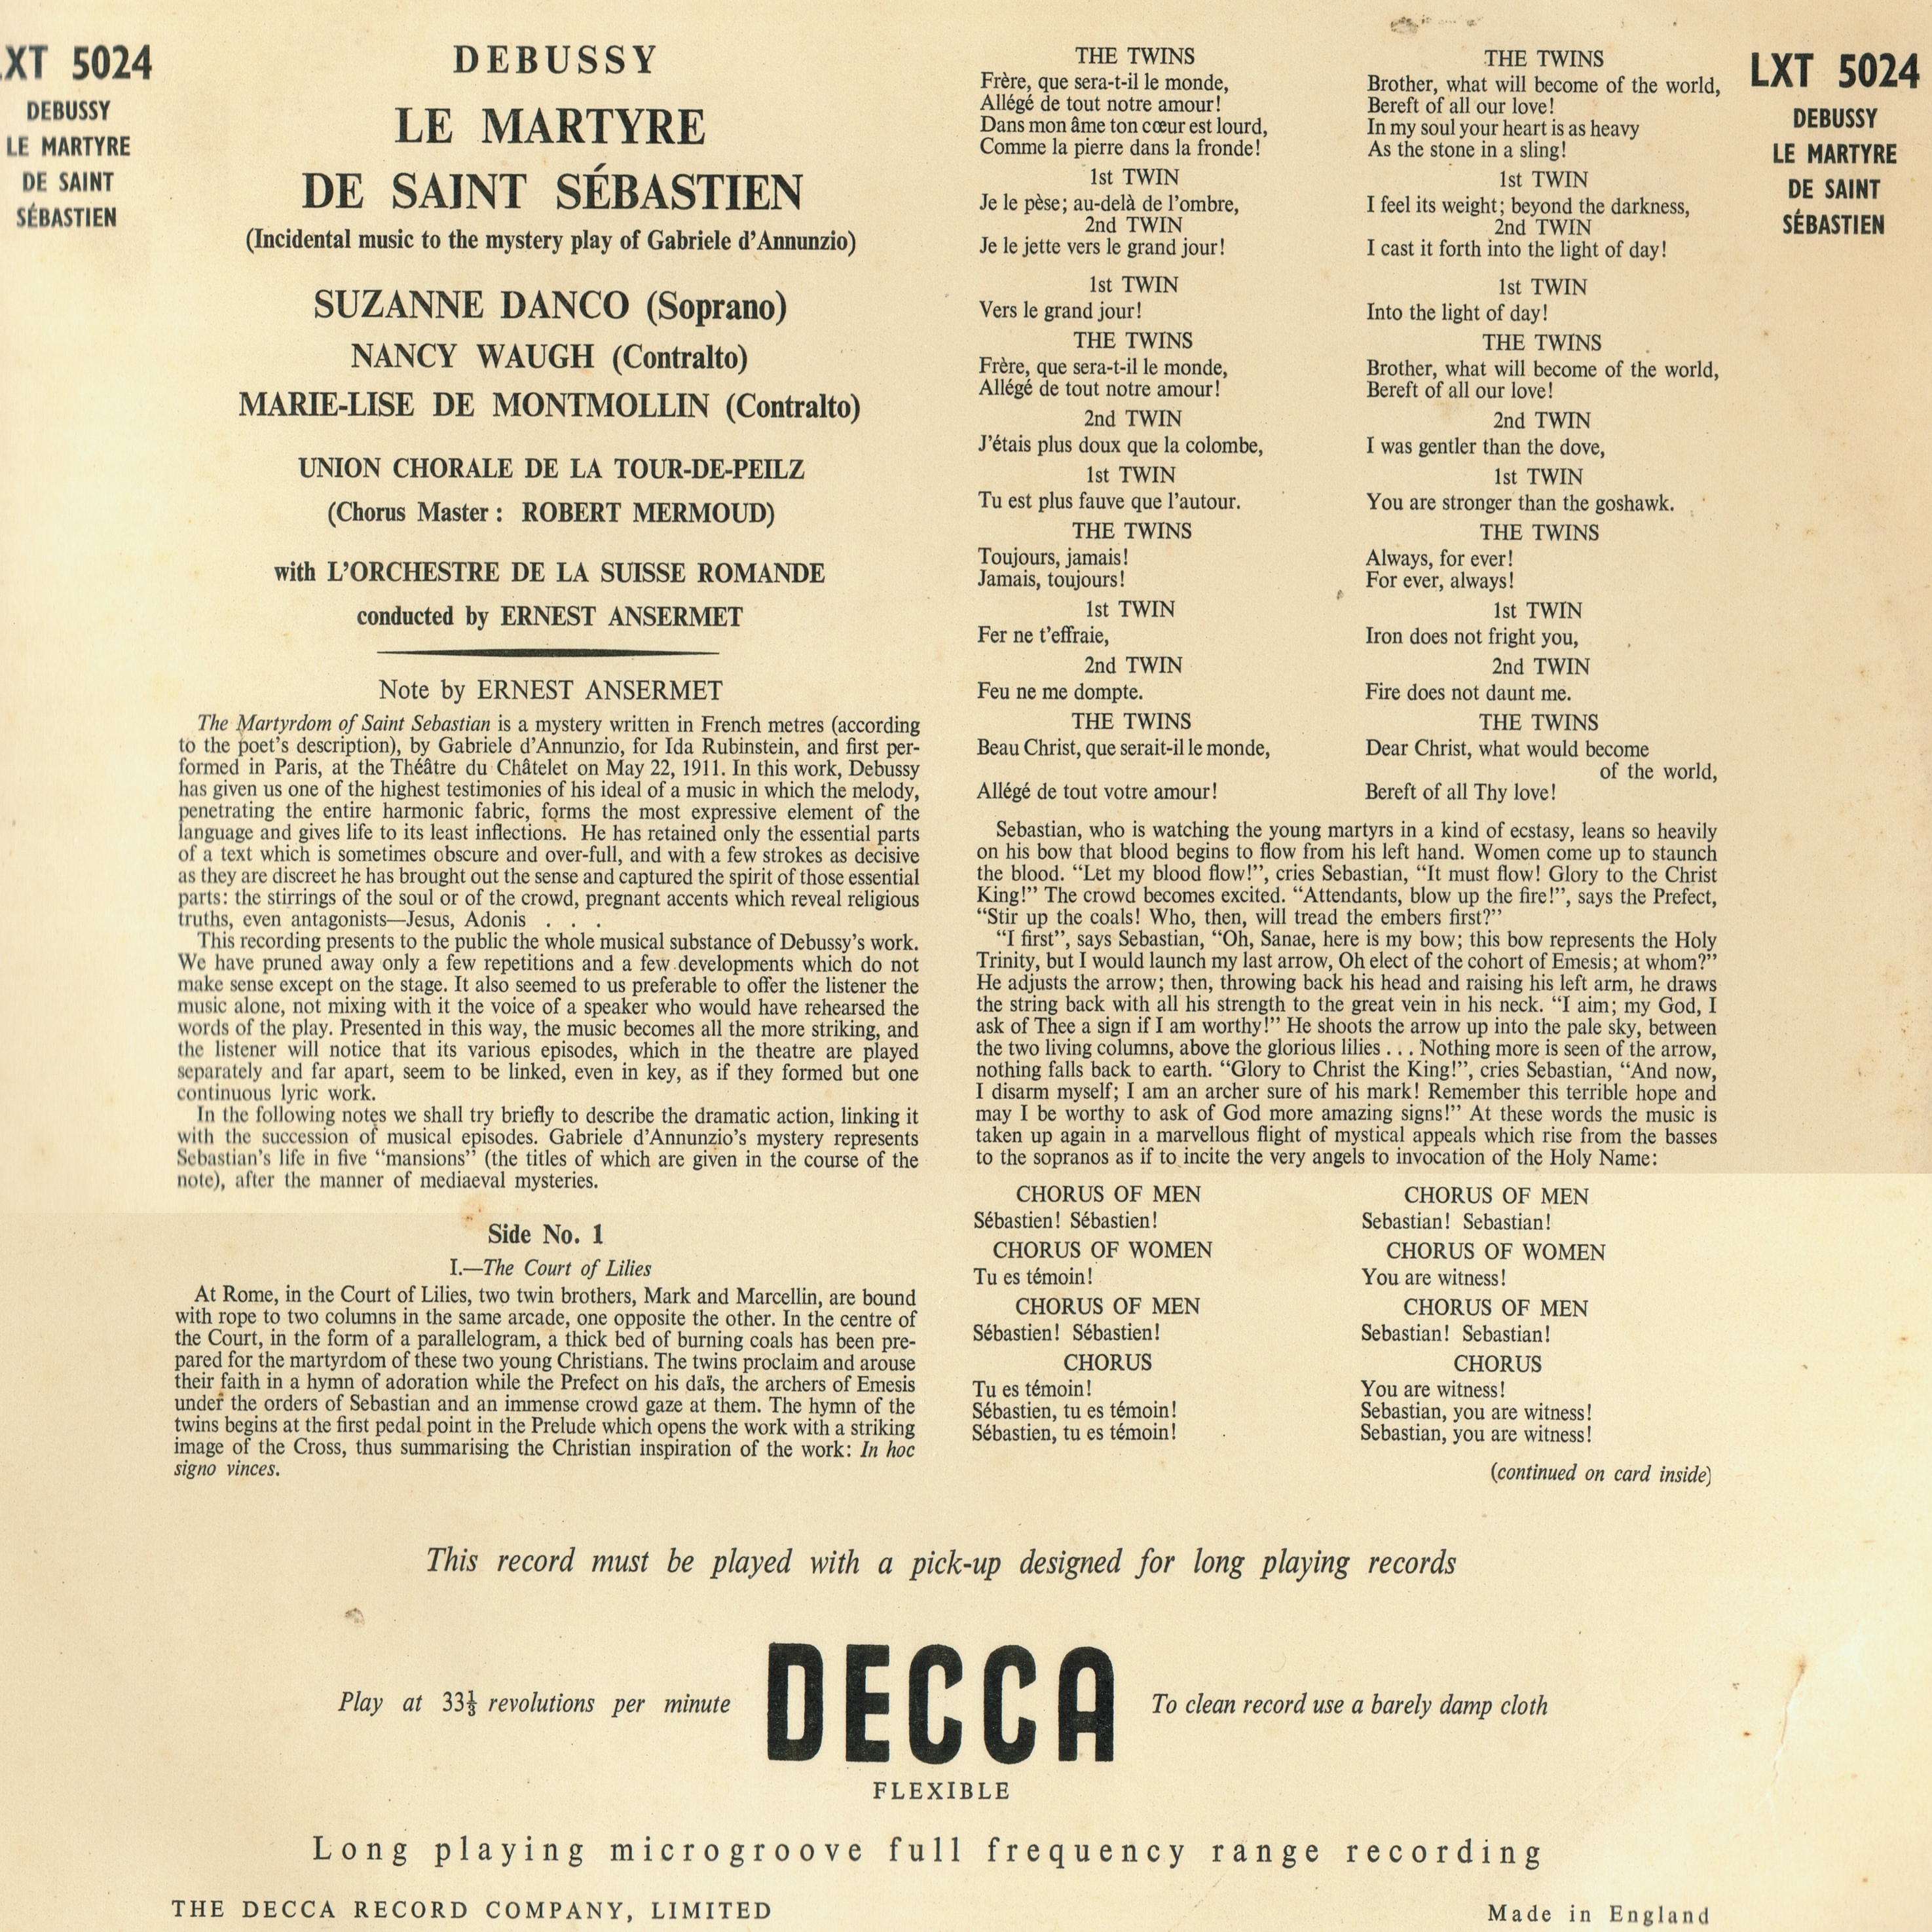 Verso de la pochette du disque Decca LXT 5024, Cliquer sur la photo pour une vue agrandie et les références